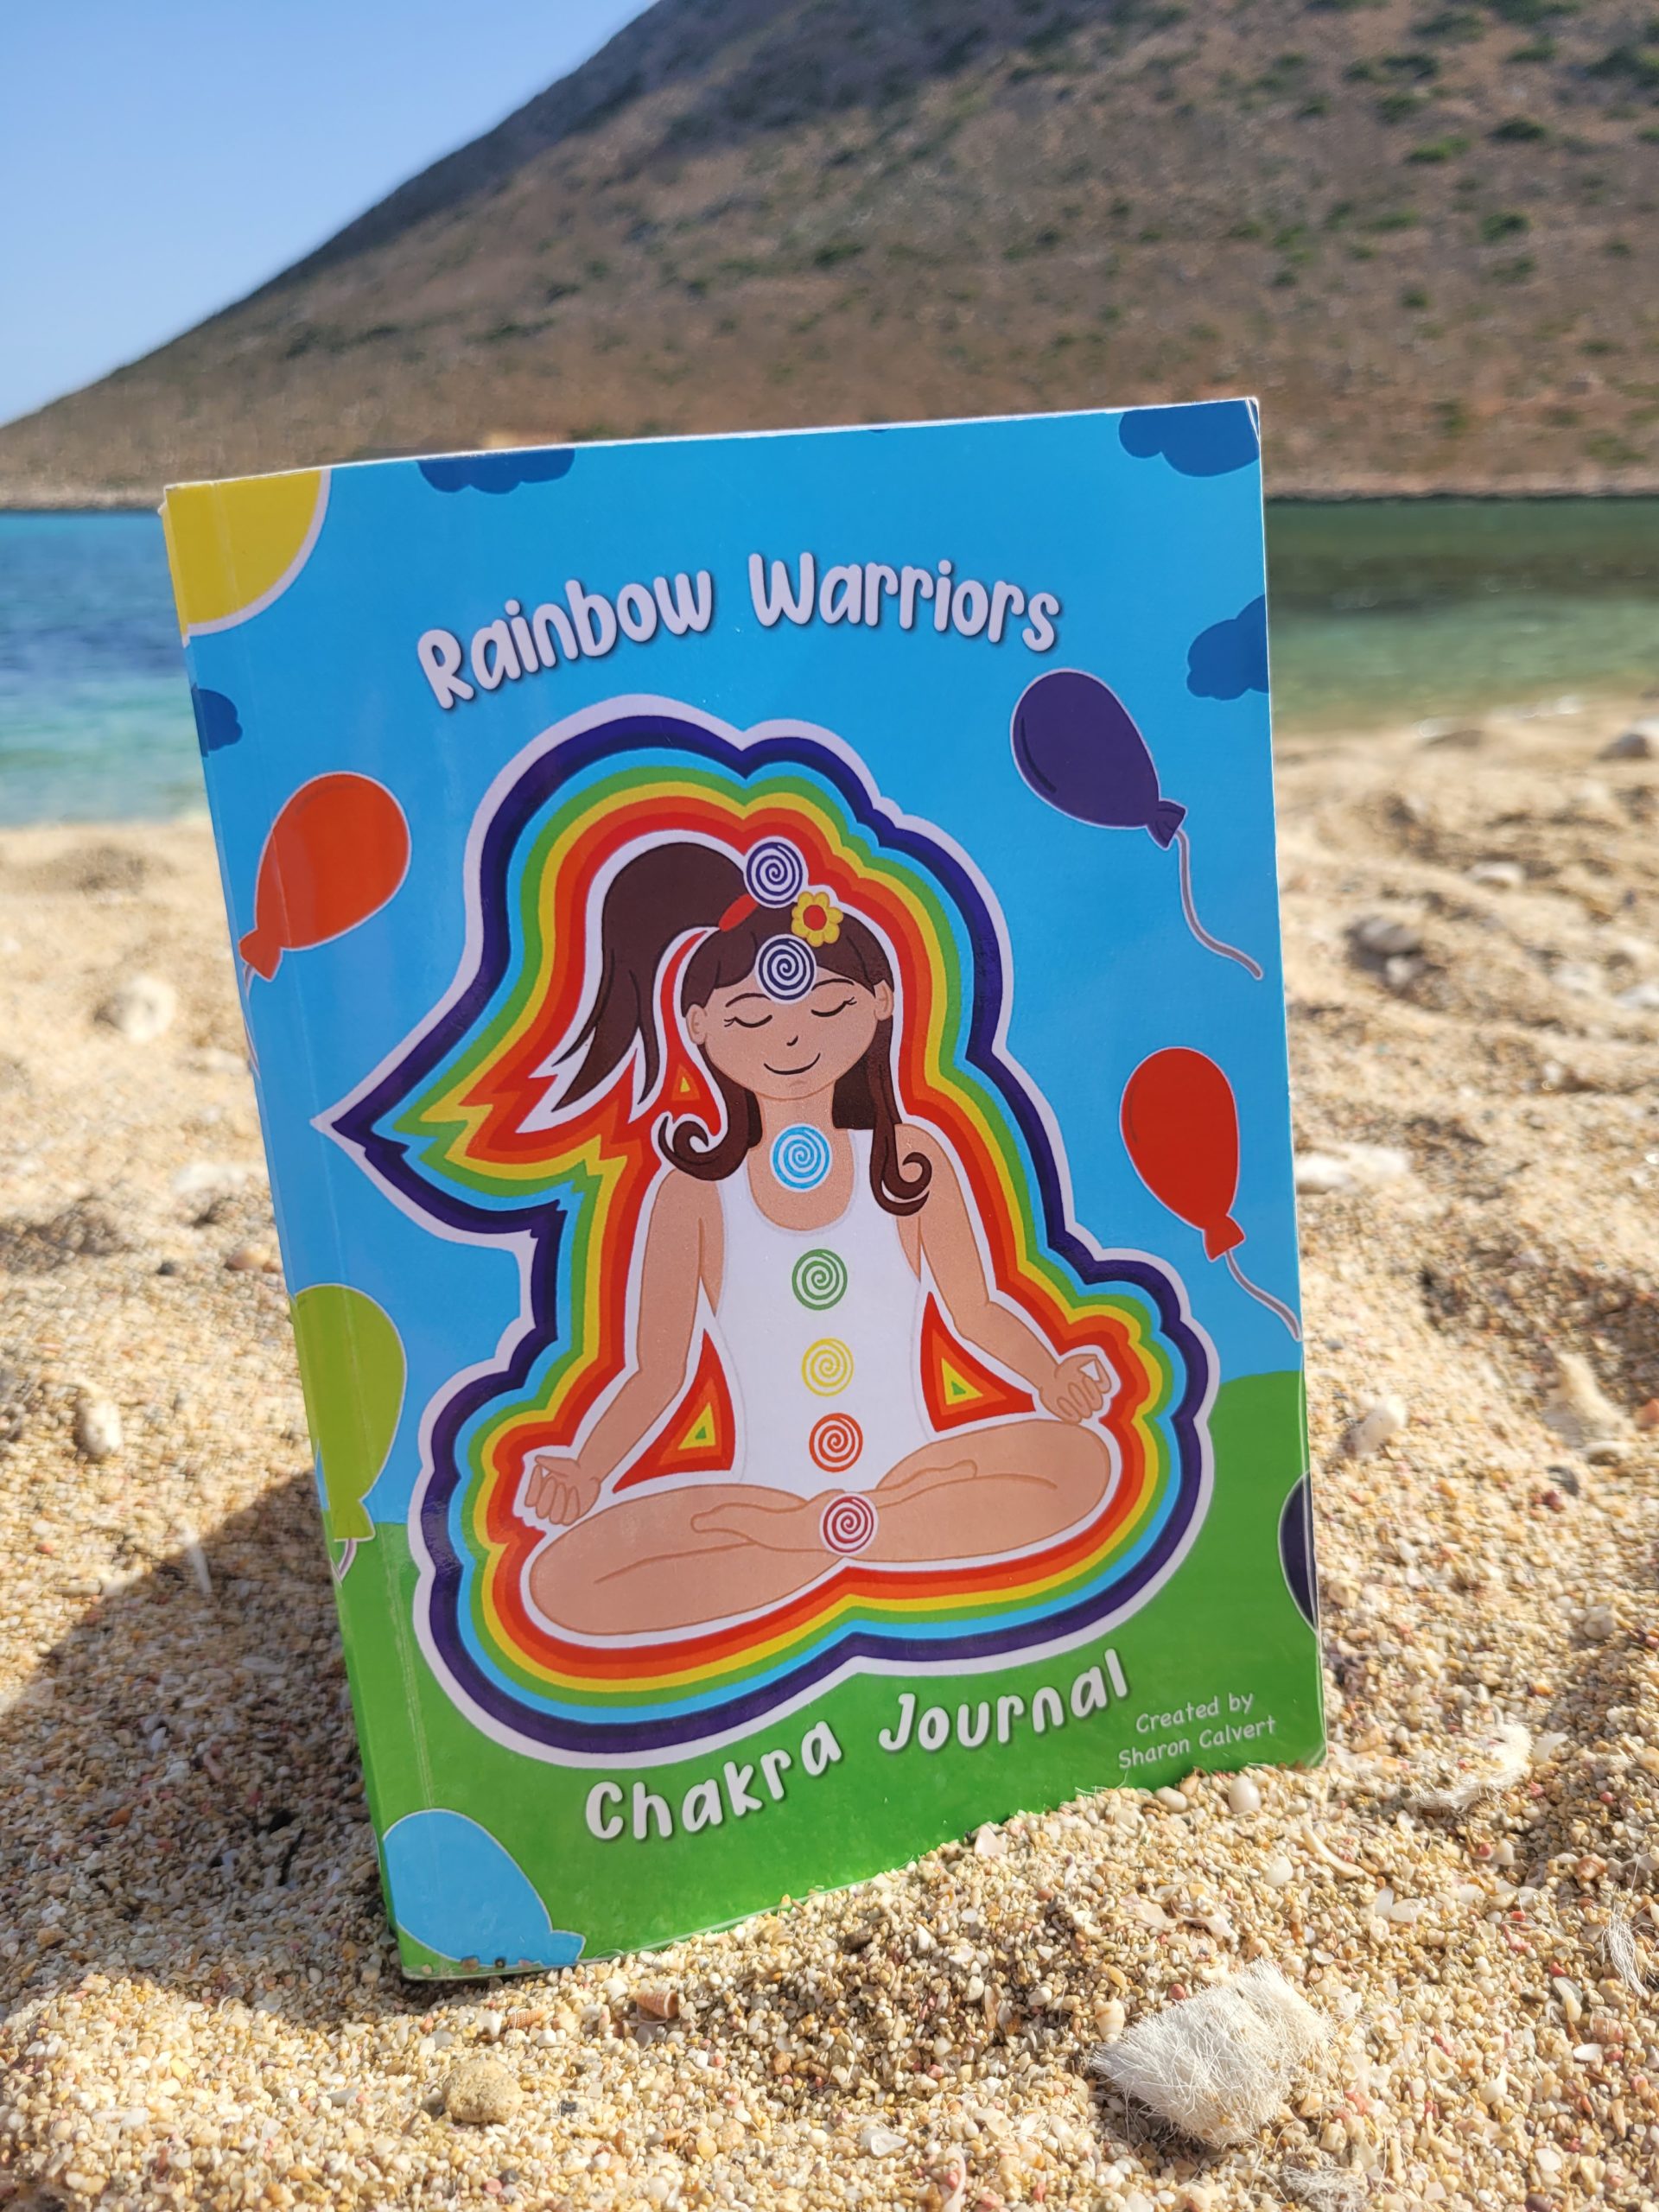 HUGE Sale on the Rainbow Warriors eBooks!